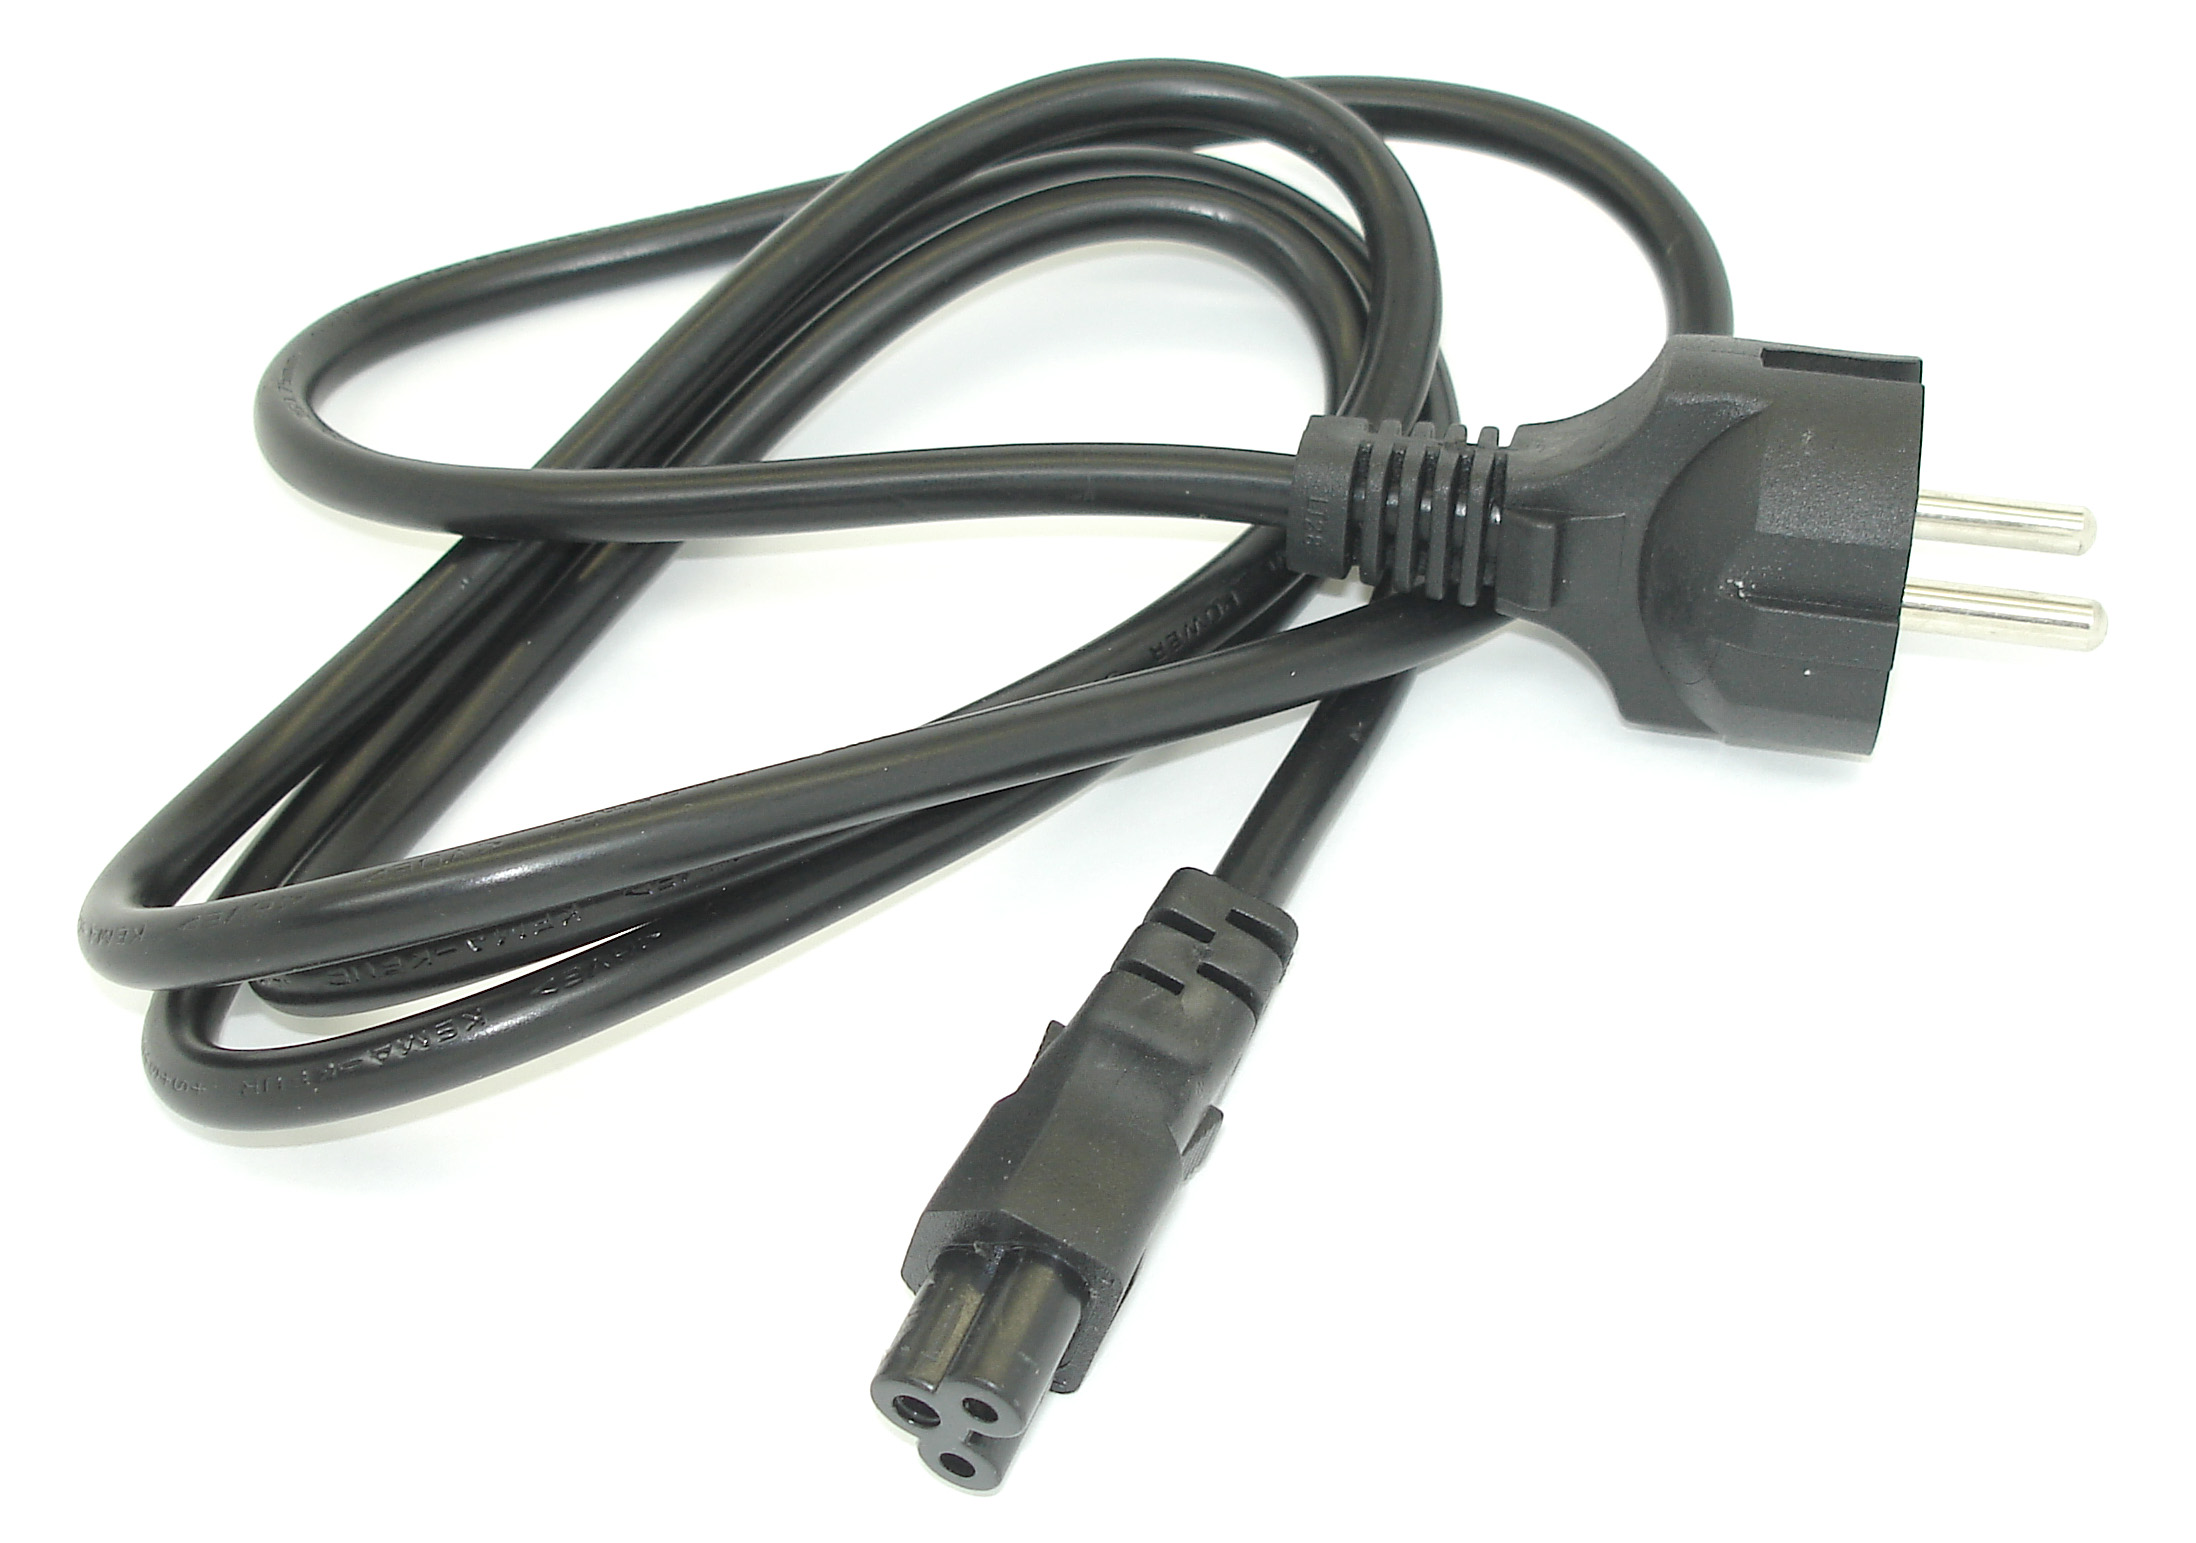 Купить кабель "Mickey Mouse" сетевой для блоков питания трехлепестковый 1.0м (3x0,75mm) черный